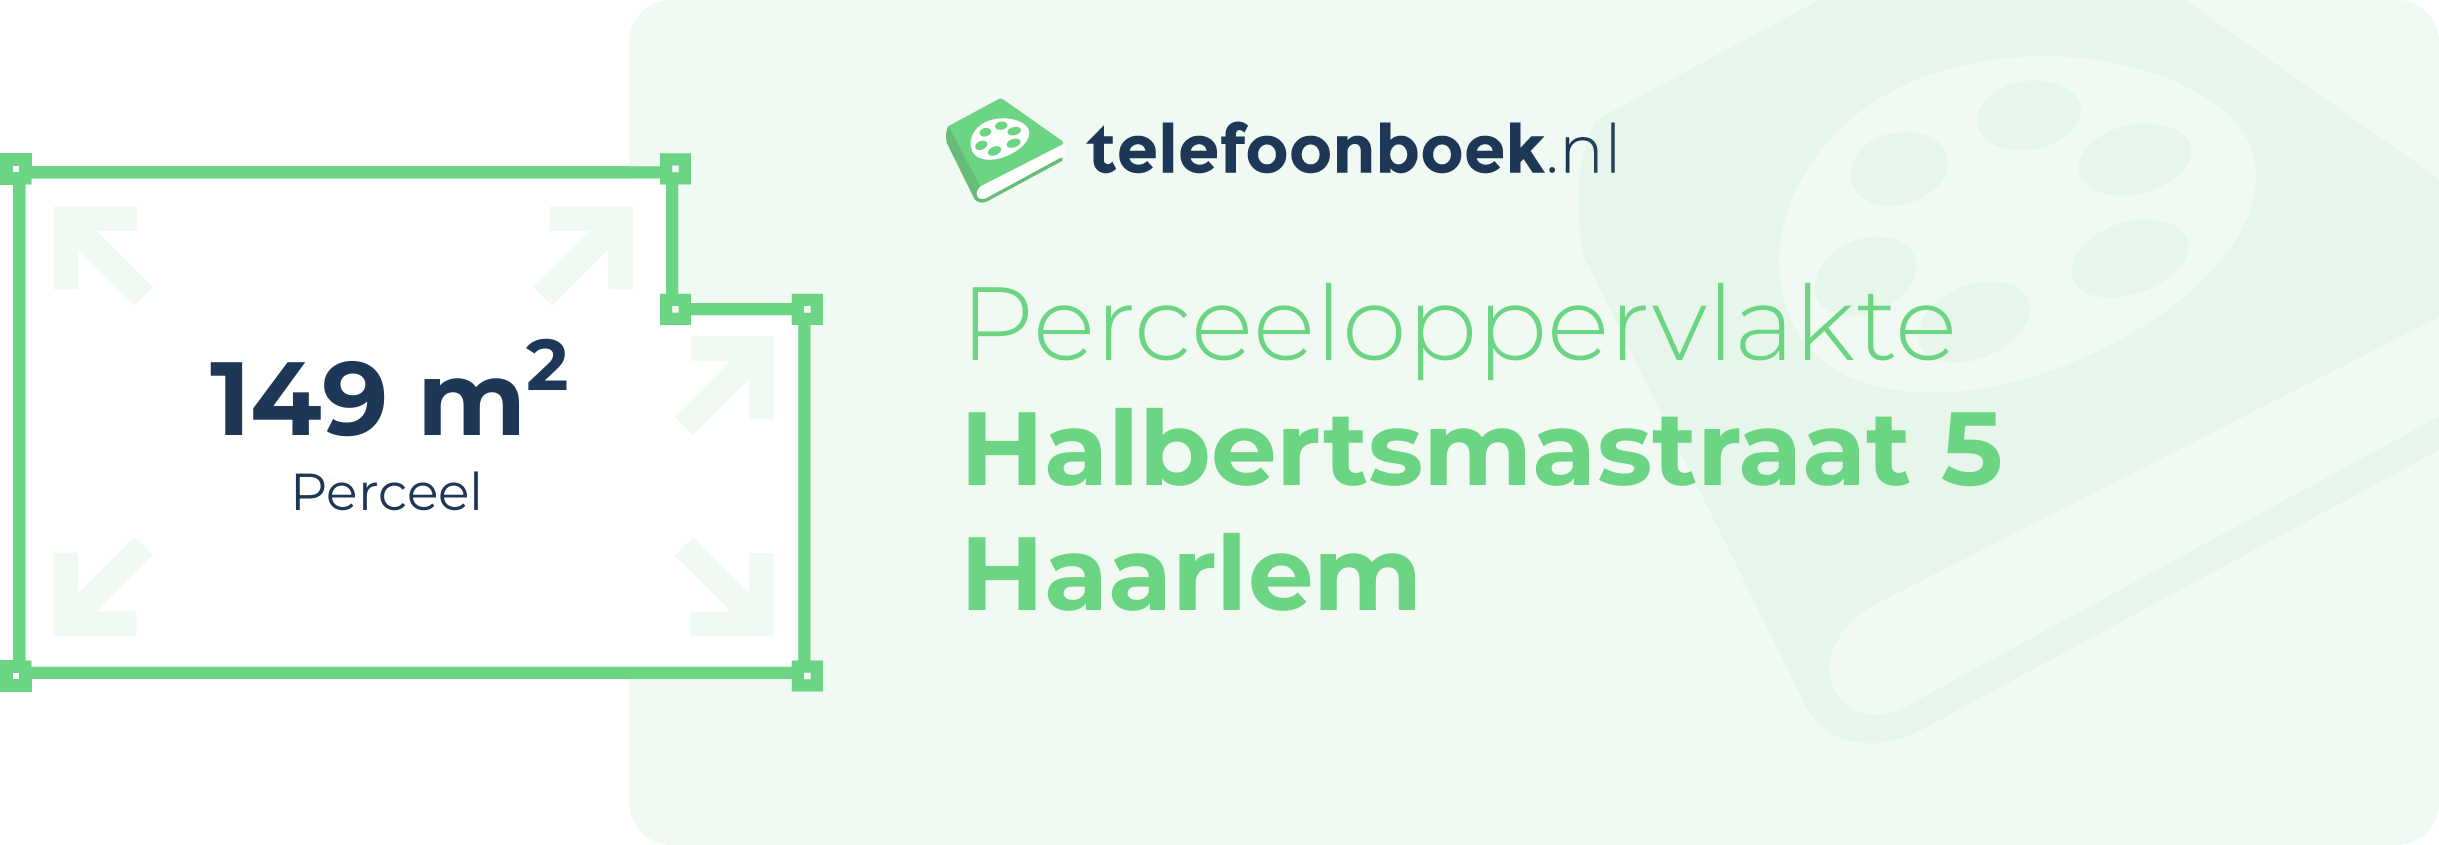 Perceeloppervlakte Halbertsmastraat 5 Haarlem